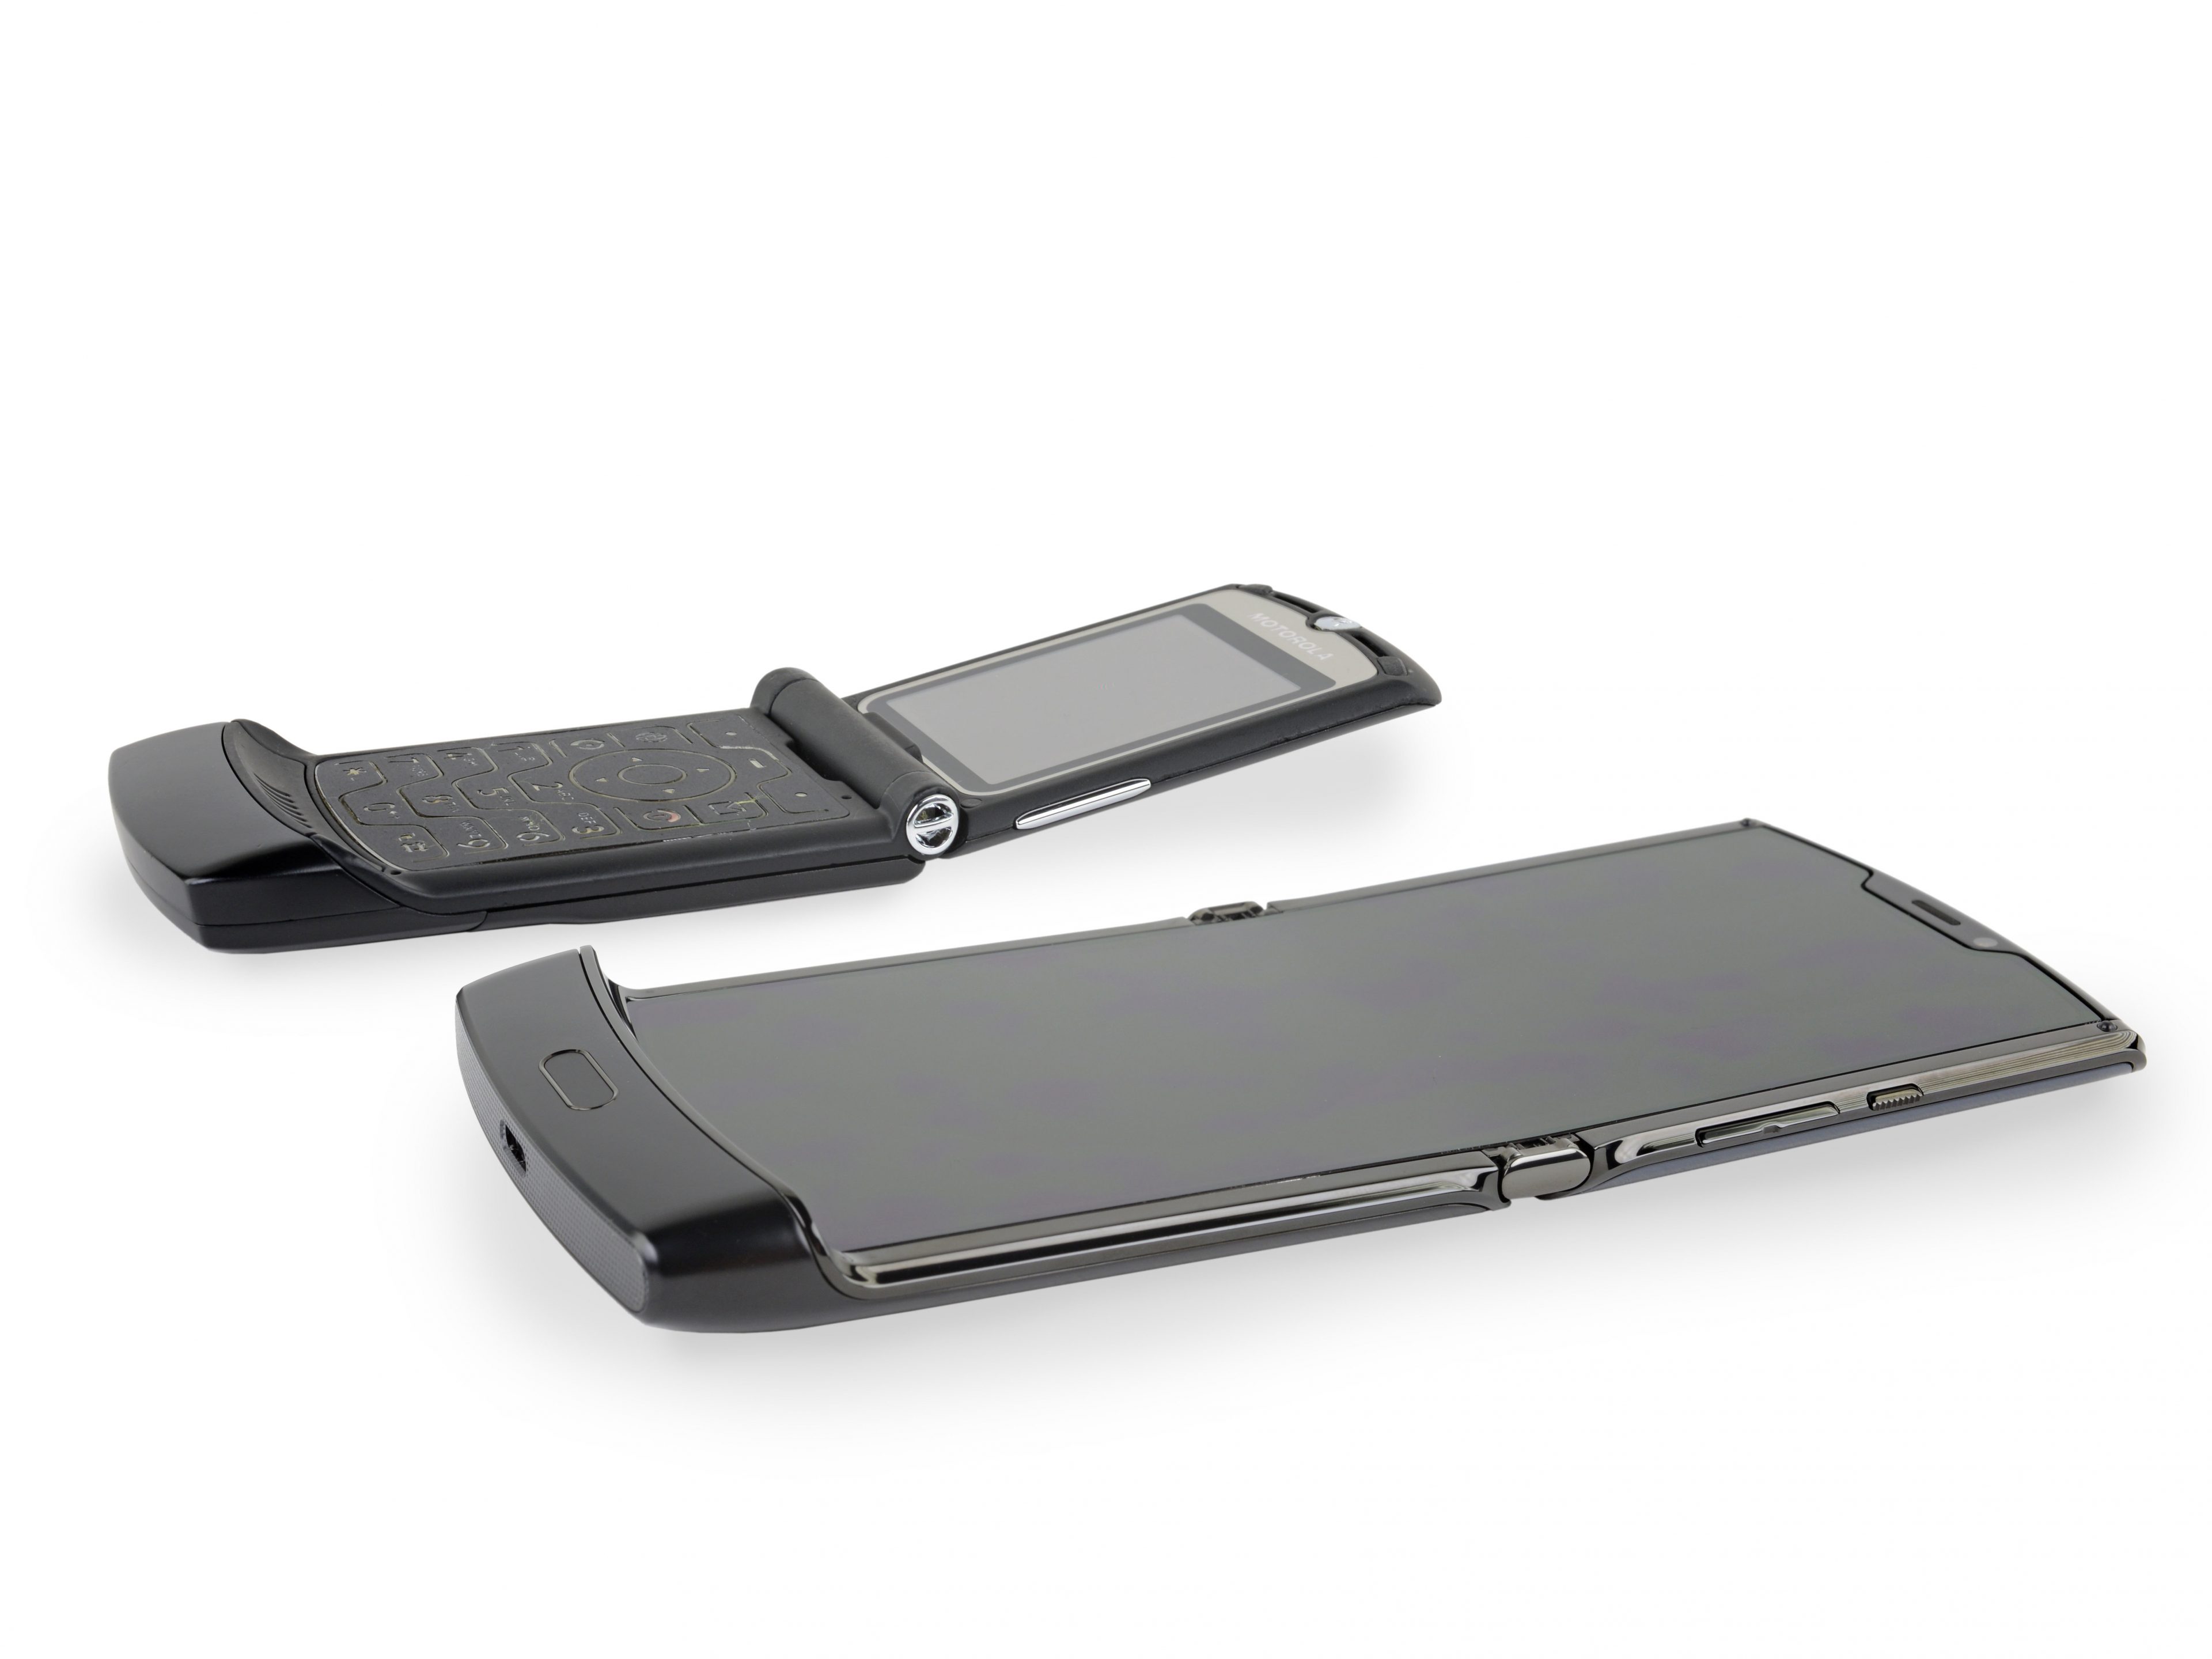 Tháo tung Motorola Razr cùng iFixit: một trong những chiếc điện thoại phức tạp nhất!